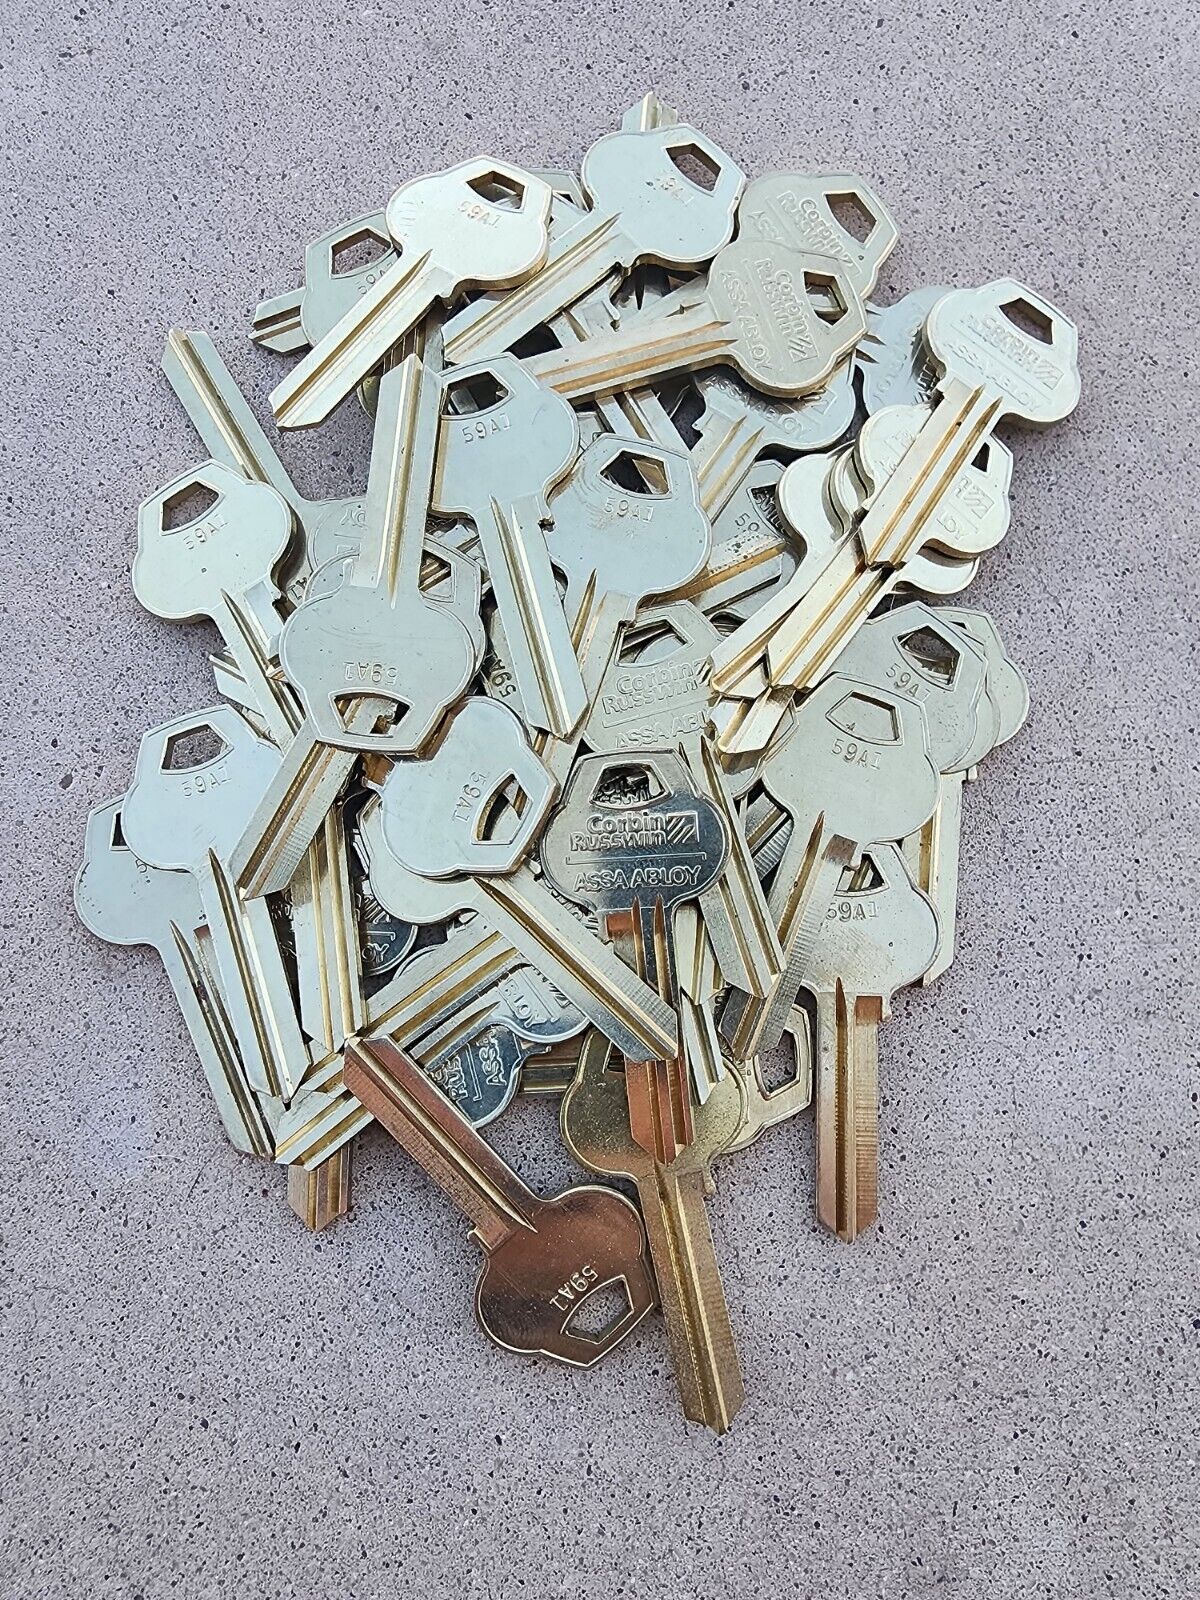 Corbin Russwin Key Blank 59A1 6 Pin Lot of 50 